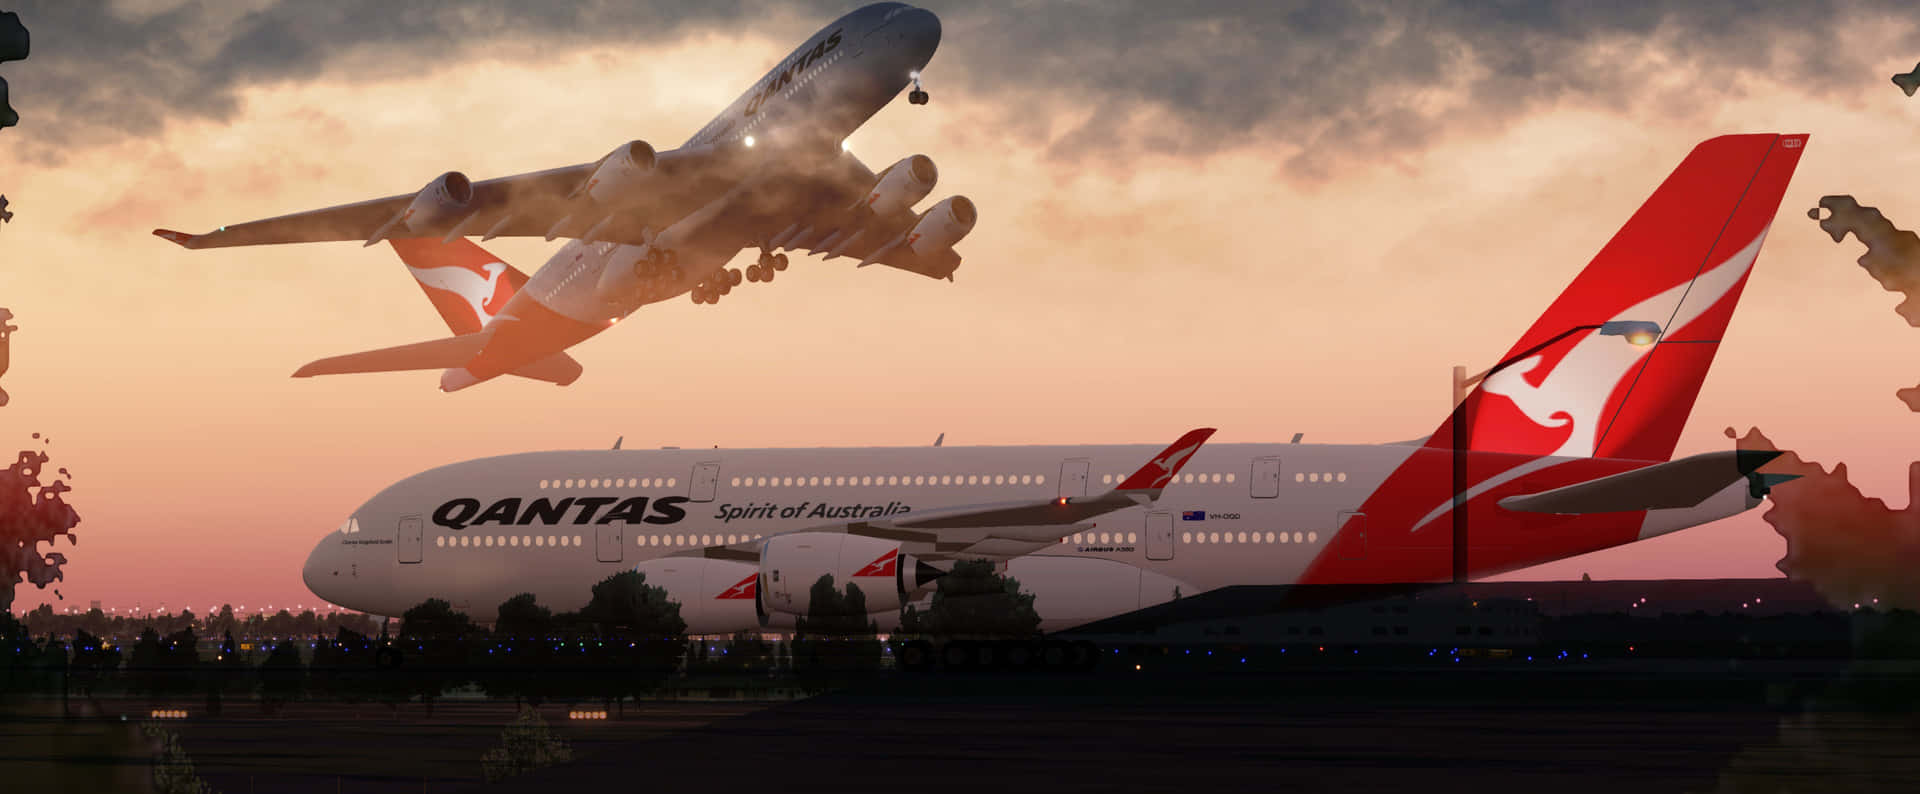 Avionesboeing 747 De Qantas Airways En Ultra Alta Definición 4k Fondo de pantalla